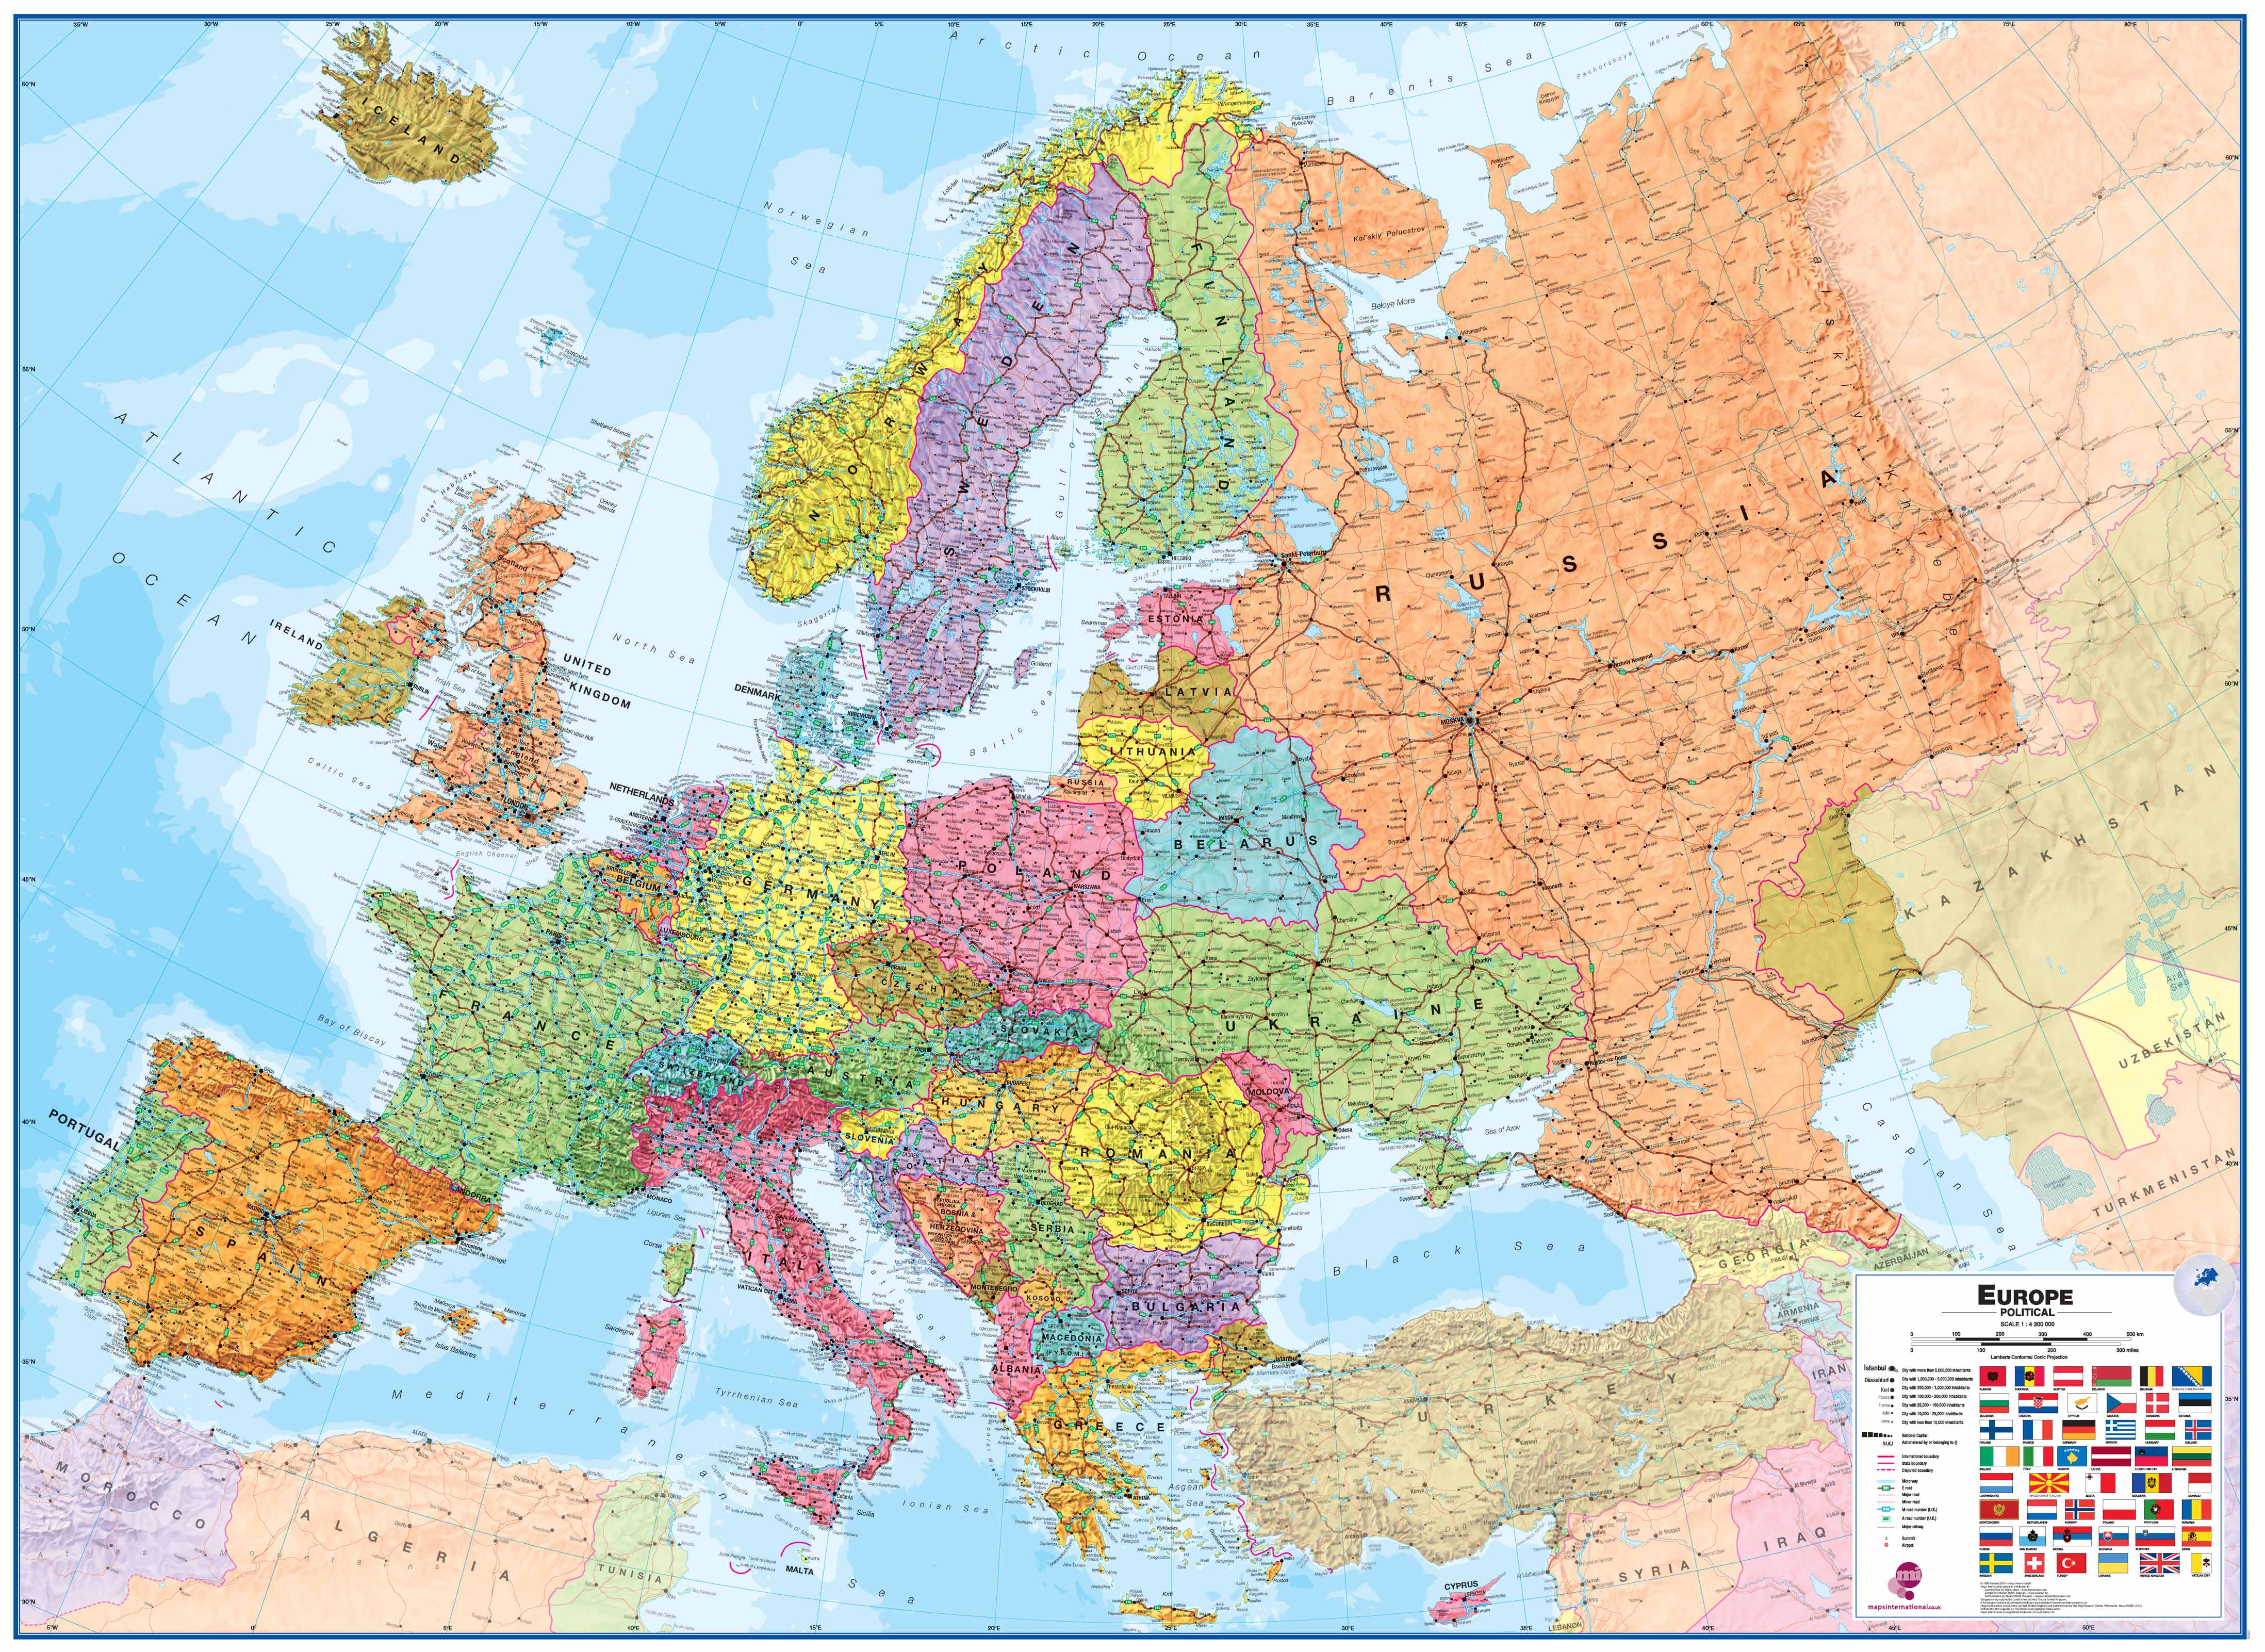 ITMB Publishing nástěnná mapa Evropa - politická, 1:4,3 tis., 136x100 cm